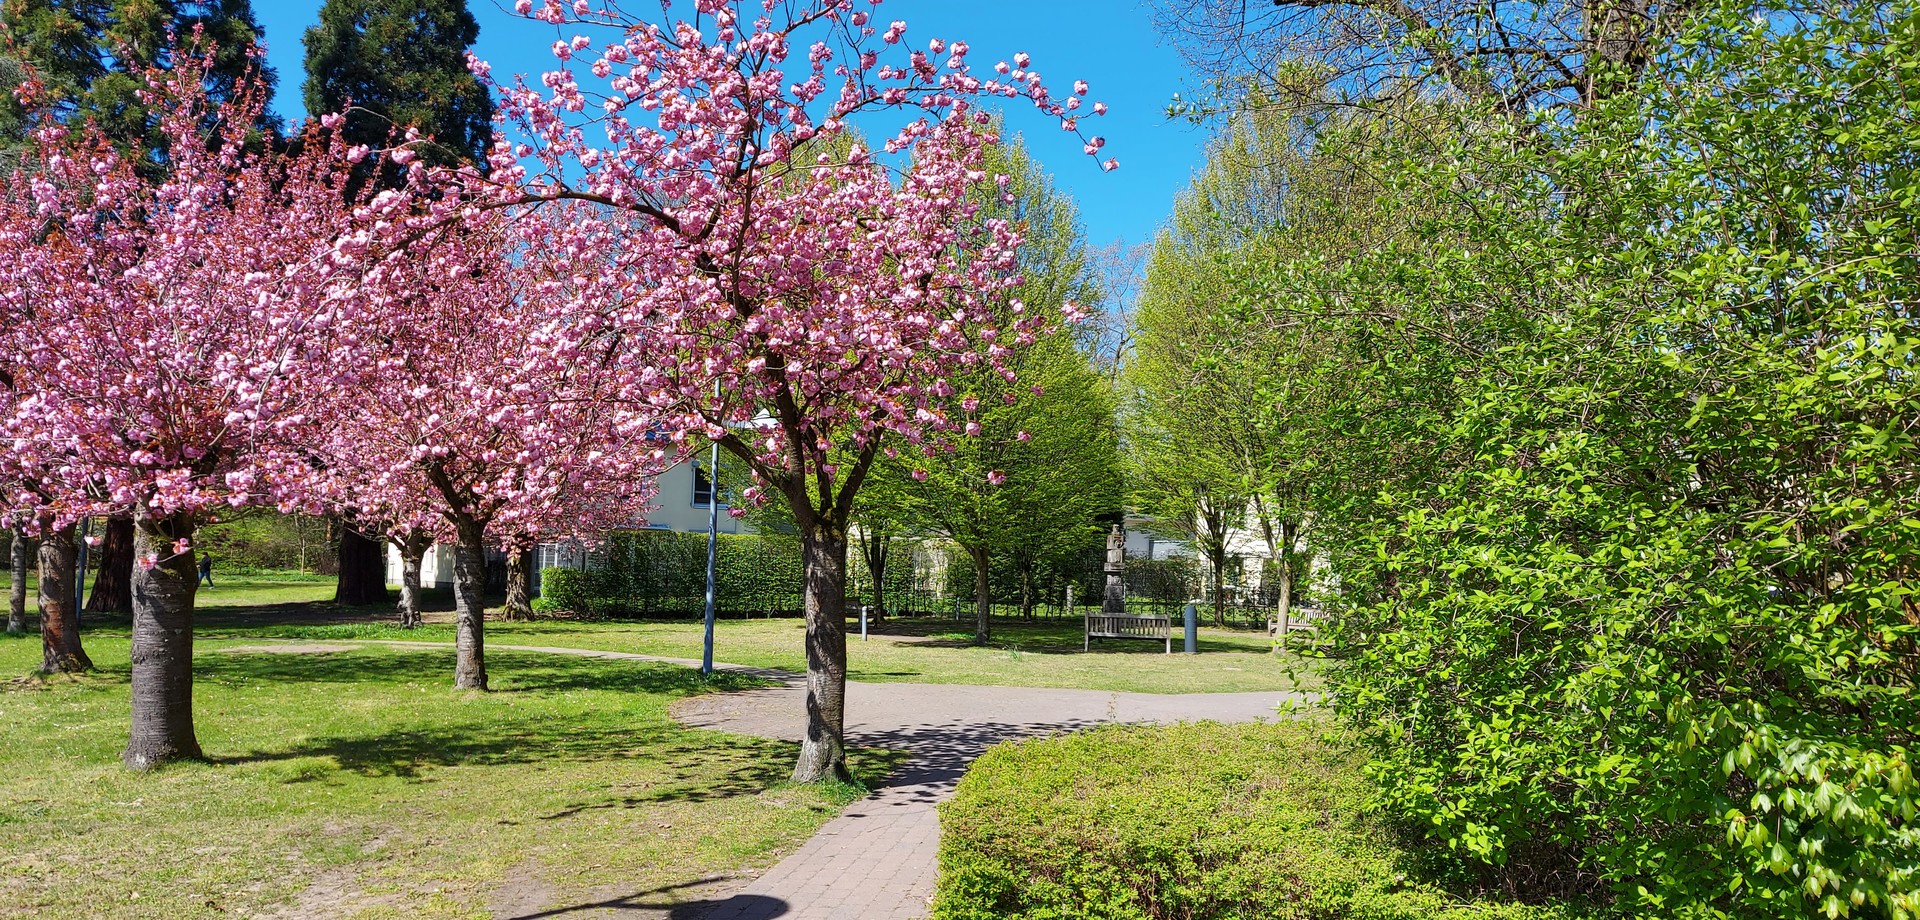 Baumkronen im Sommer, im Vordergrund sind blühende rosafarbene und grüne Blätterdächer zu sehen, im Hintergrund der blaue Sommerhimmel